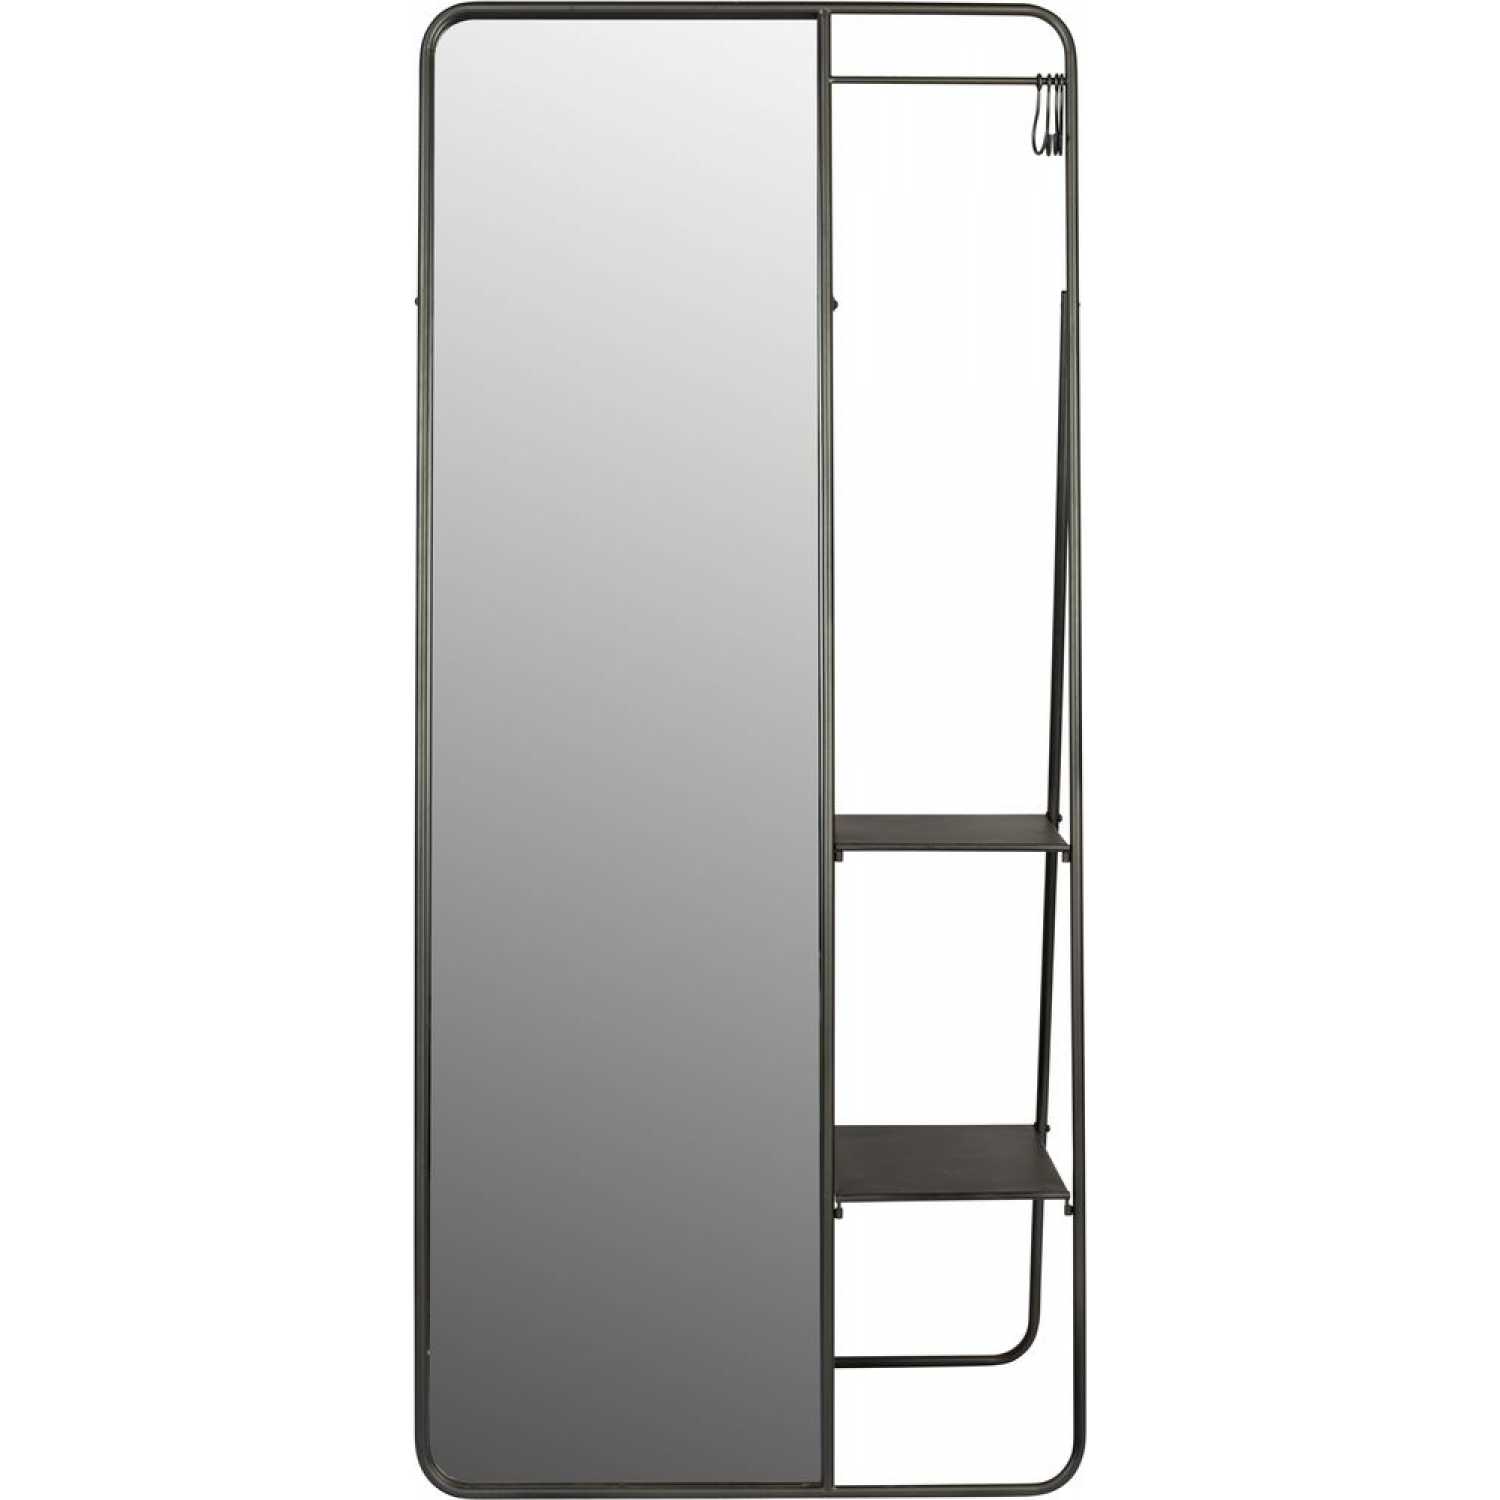 Naken Interiors Dex Freestanding Mirror With Storage